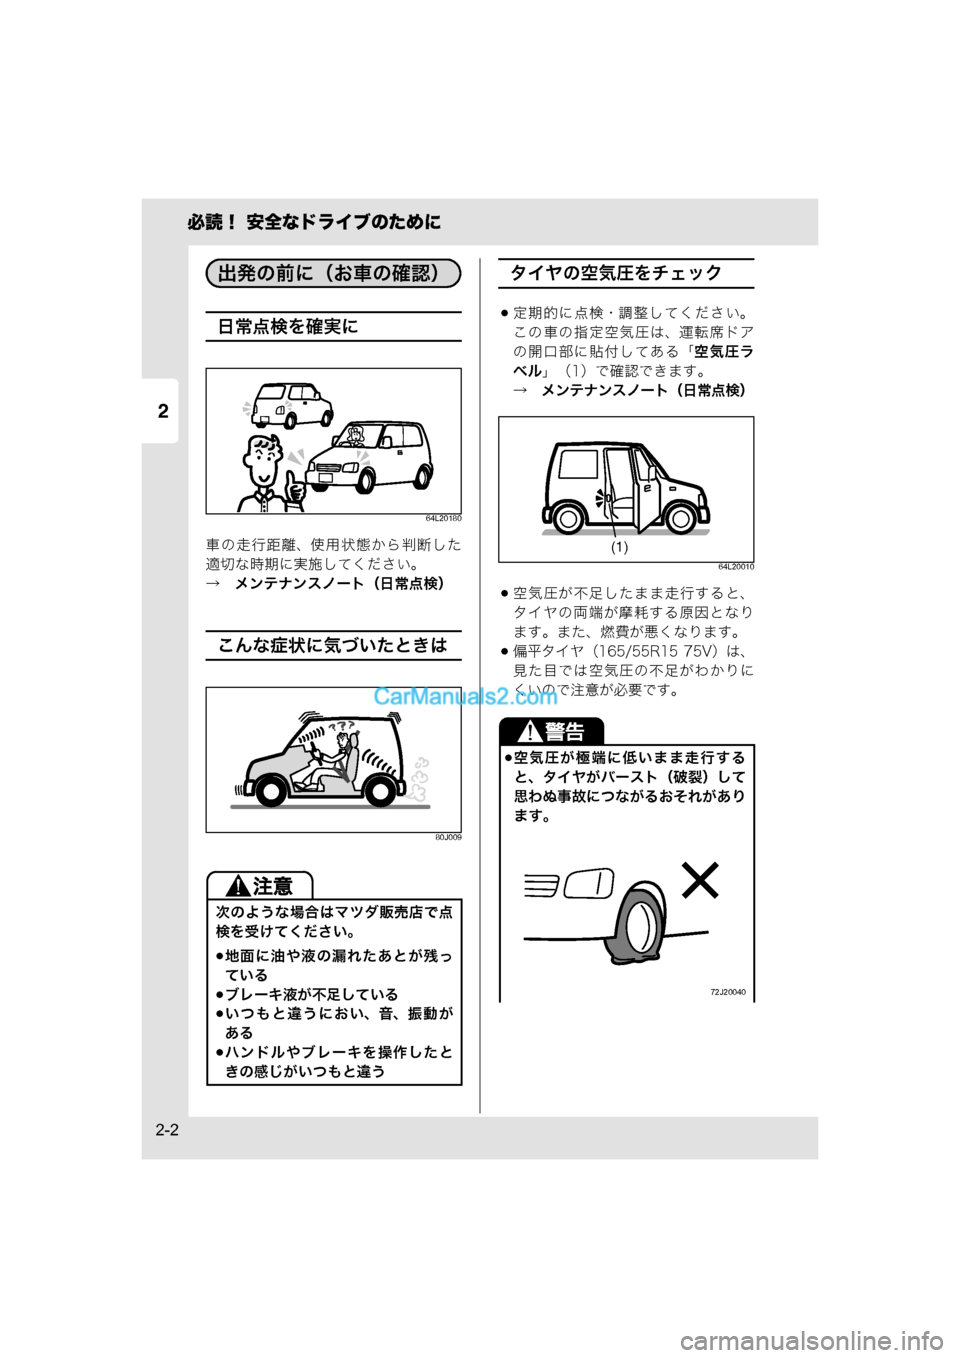 MAZDA MODEL CARROL 2015  取扱説明書 (キャロル) (in Japanese) 2
必読！ 安全なドライブのために
2-2
日常点検を確実に
64L20180
車の走行距離、使用状態から判断した
適切な時期に実施してください。
→　メンテナ